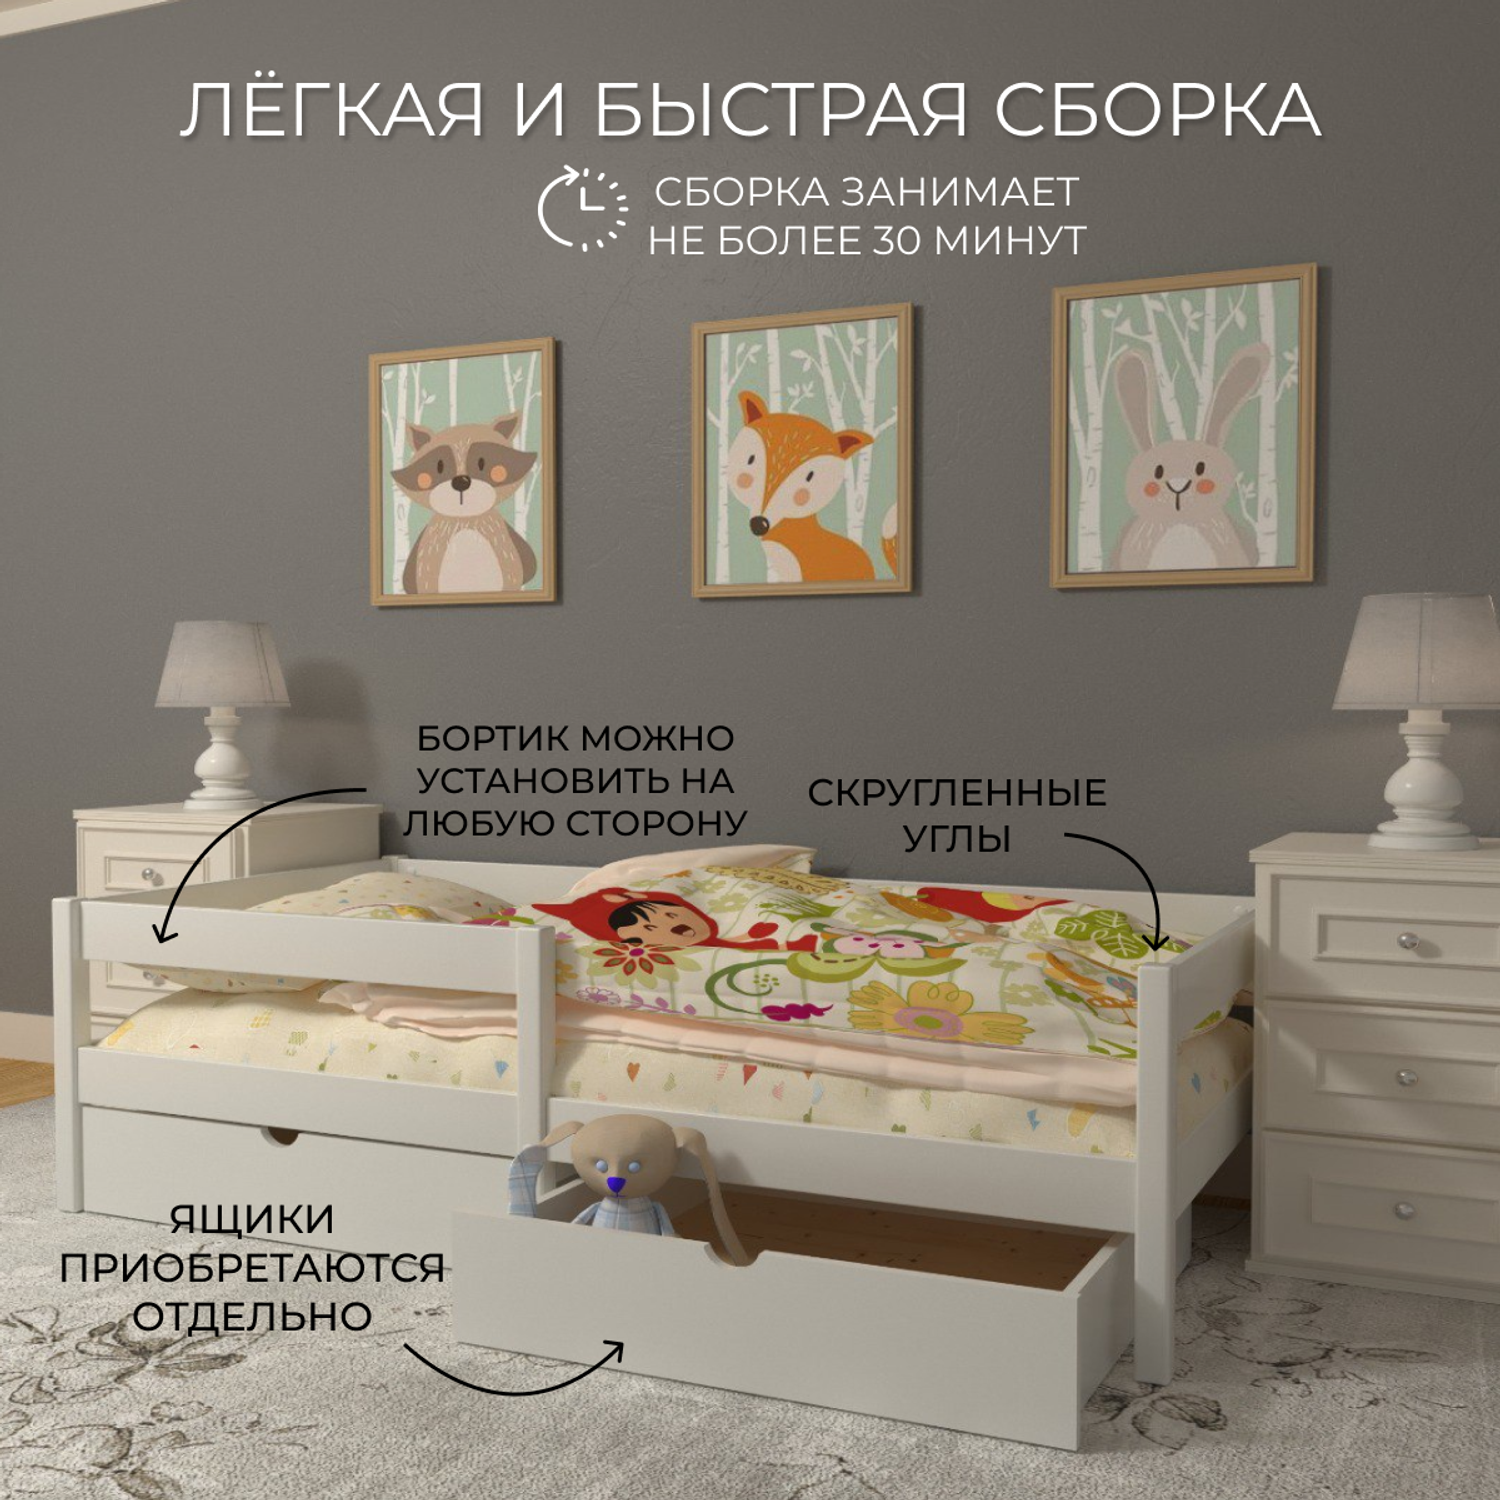 Кровать детская Moms charm белая 140х70 см - фото 3